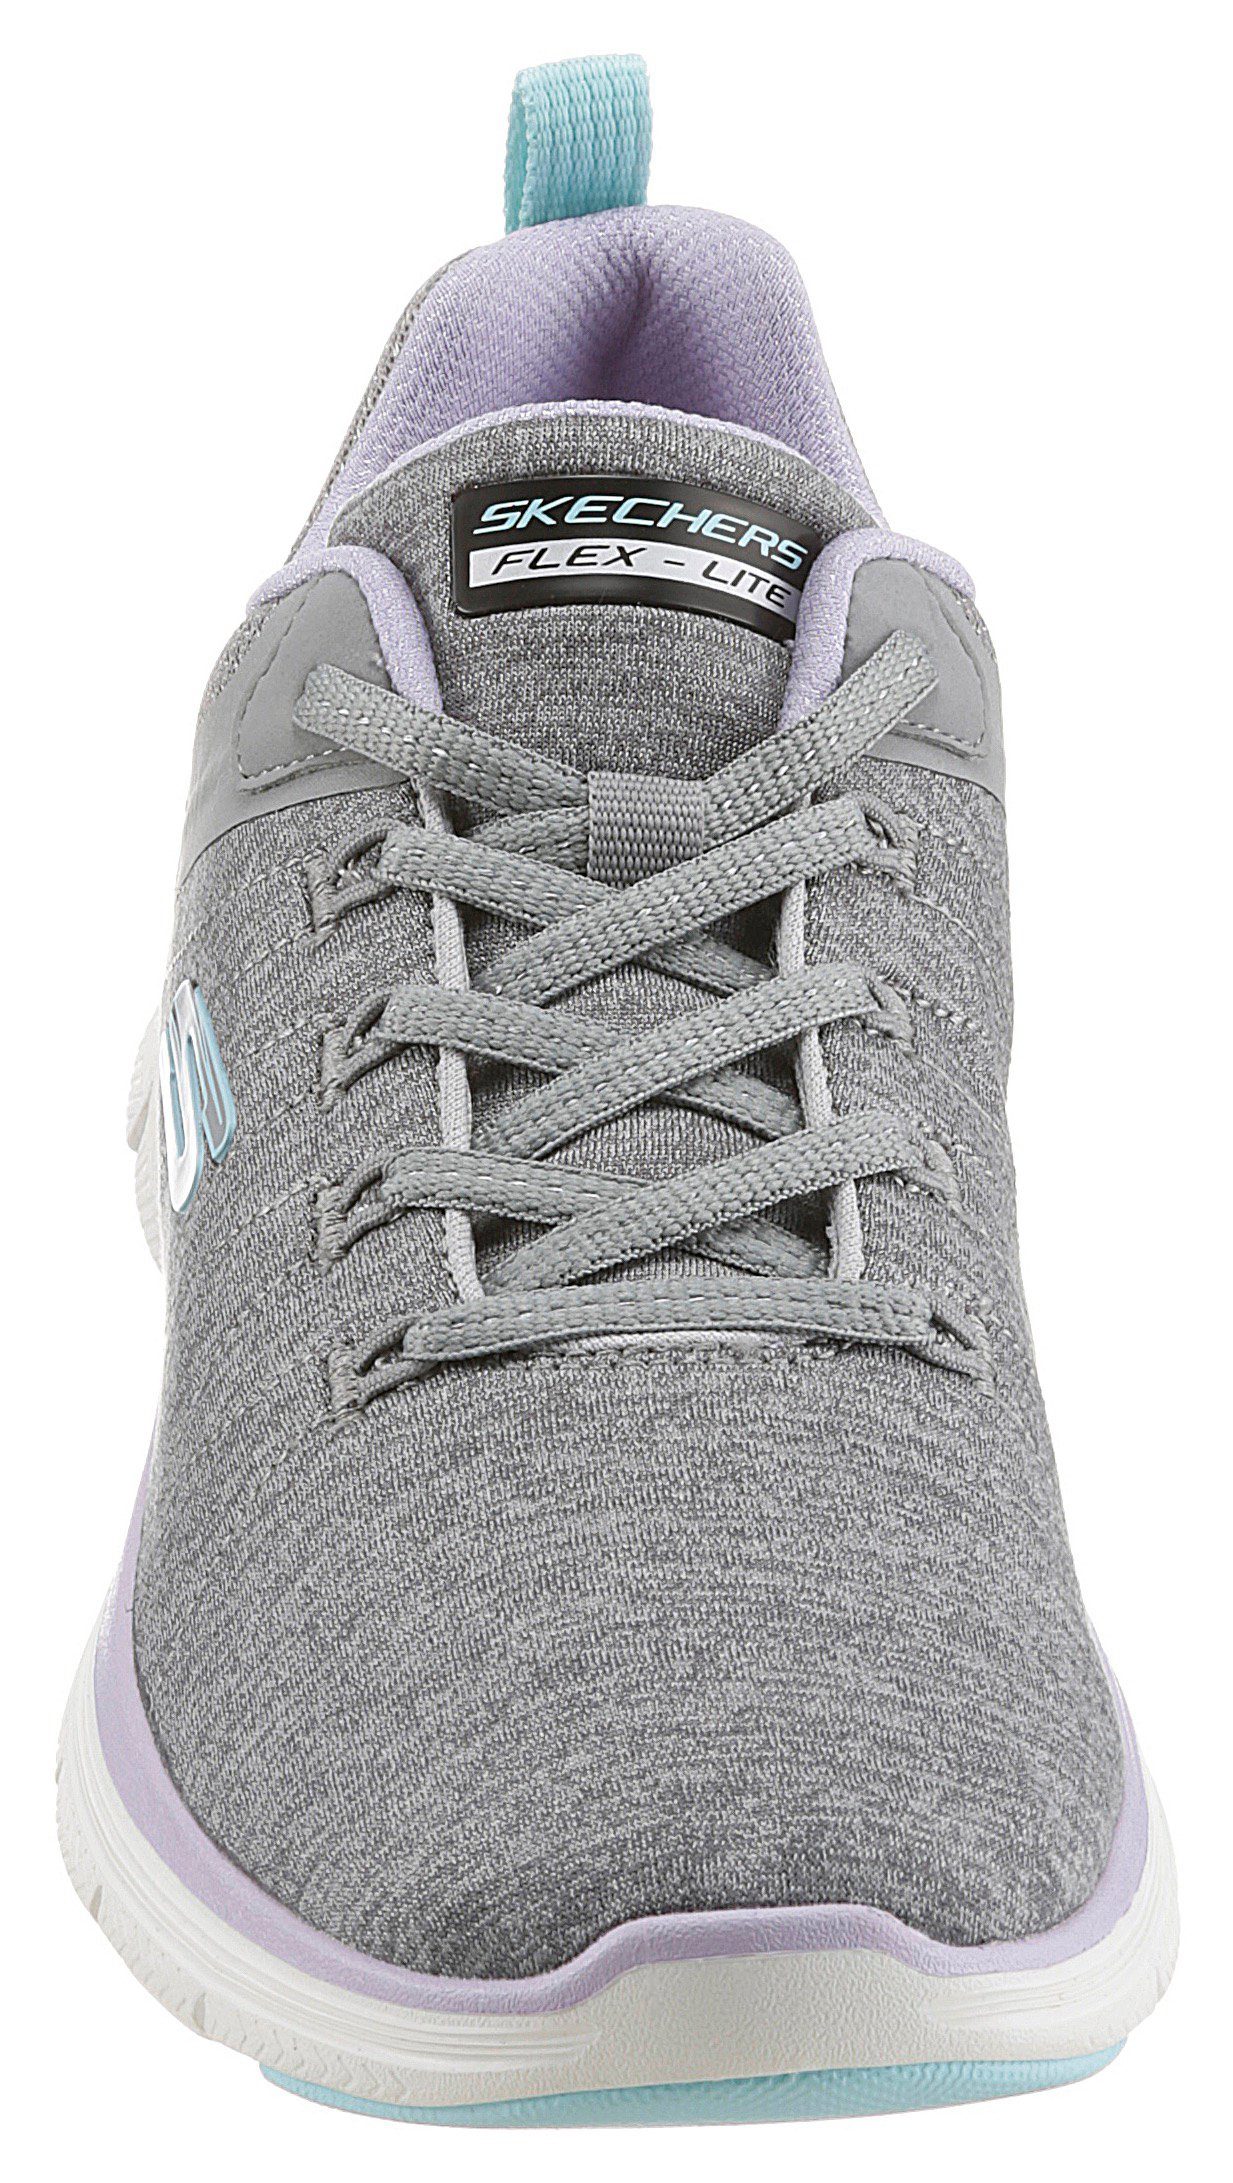 FLEX 4.0 grau-flieder-türkis Skechers APPEAL BRILLIANT Maschinenwäsche Sneaker - geeignet VIEW für